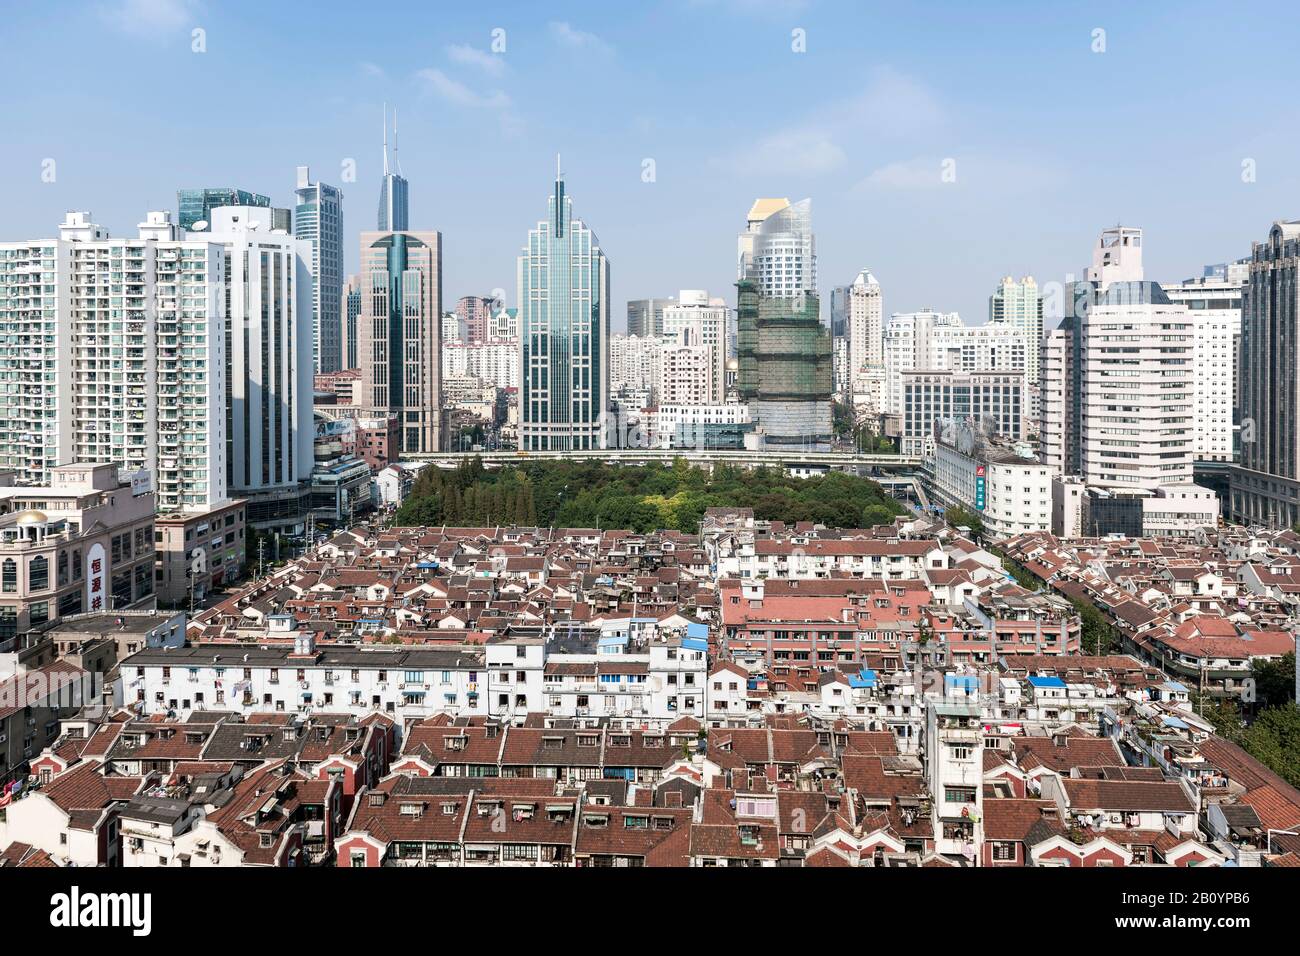 Historische und moderne Gebäude, Stadtentwicklung, Renmin Road, Puxi, Shanghai, China, Asien Stockfoto